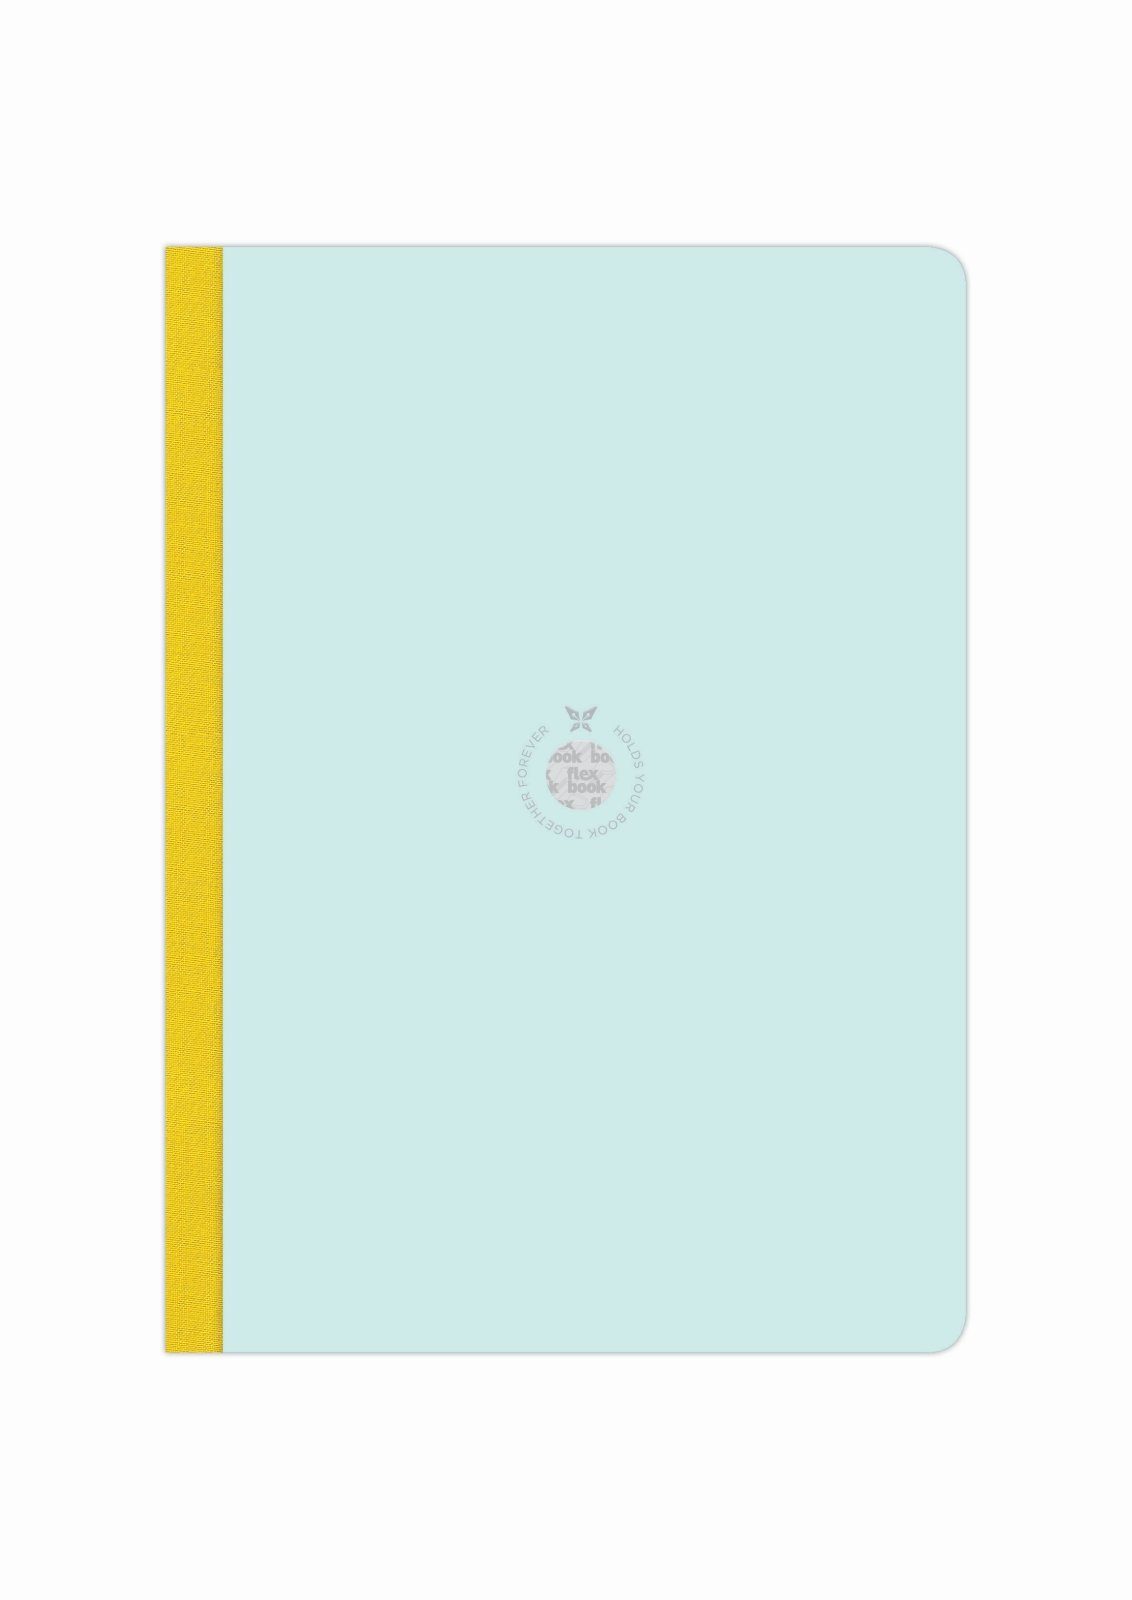 Flexbook Notizbuch Flexbook Smartbook Größen/Fa Hellblau-grün Seiten 160 21*29cm viele Ökopapiereinband Liniert